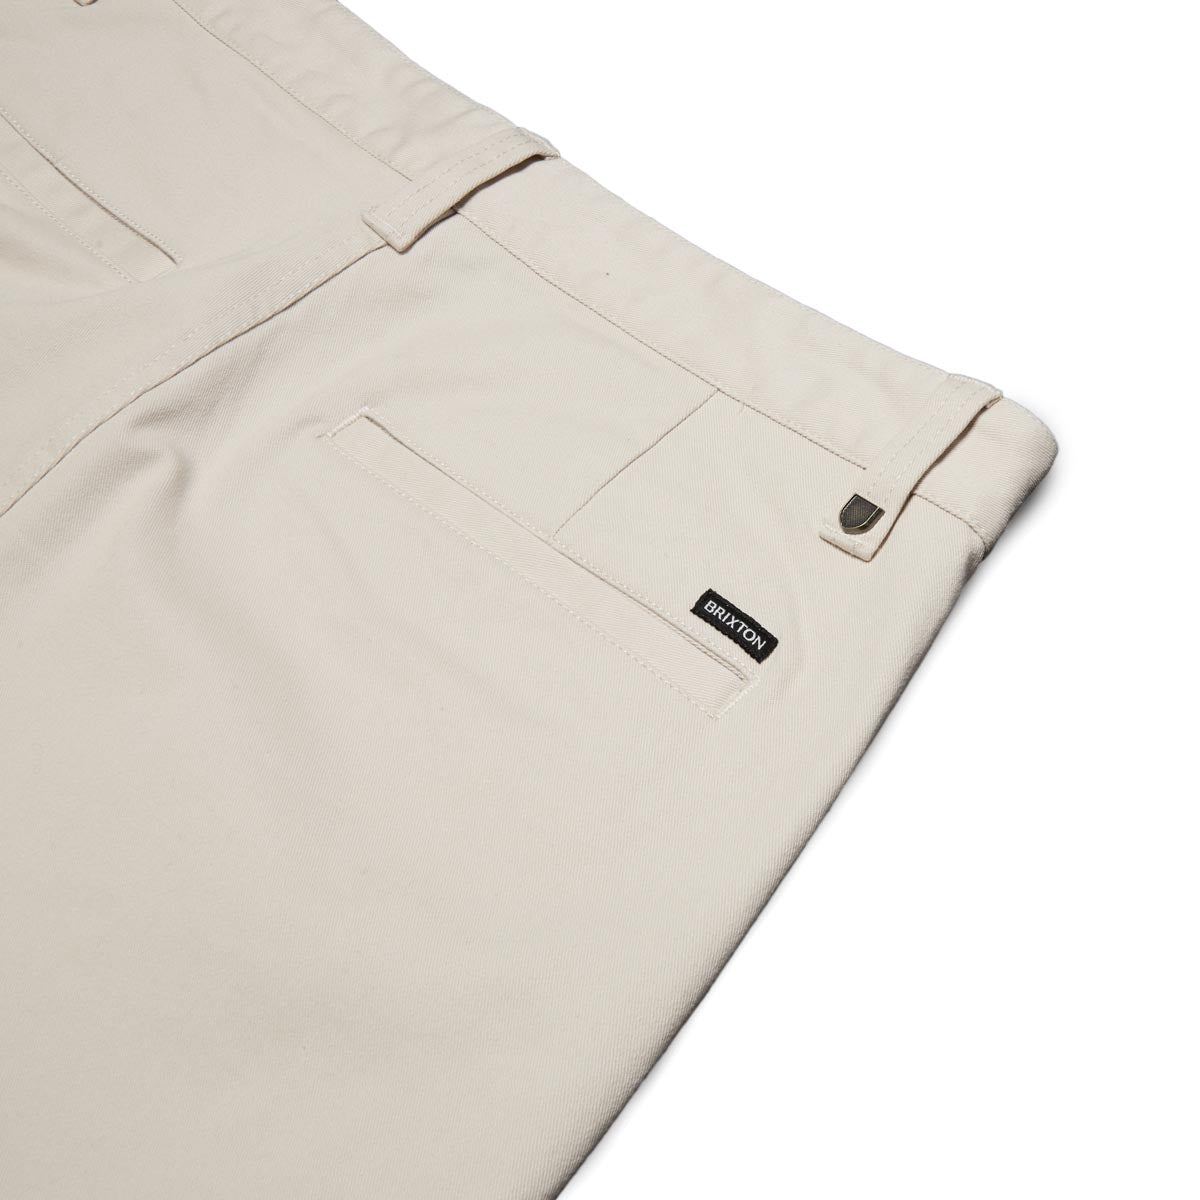 Brixton Choice Chino Regular Pants - Whitecap image 4